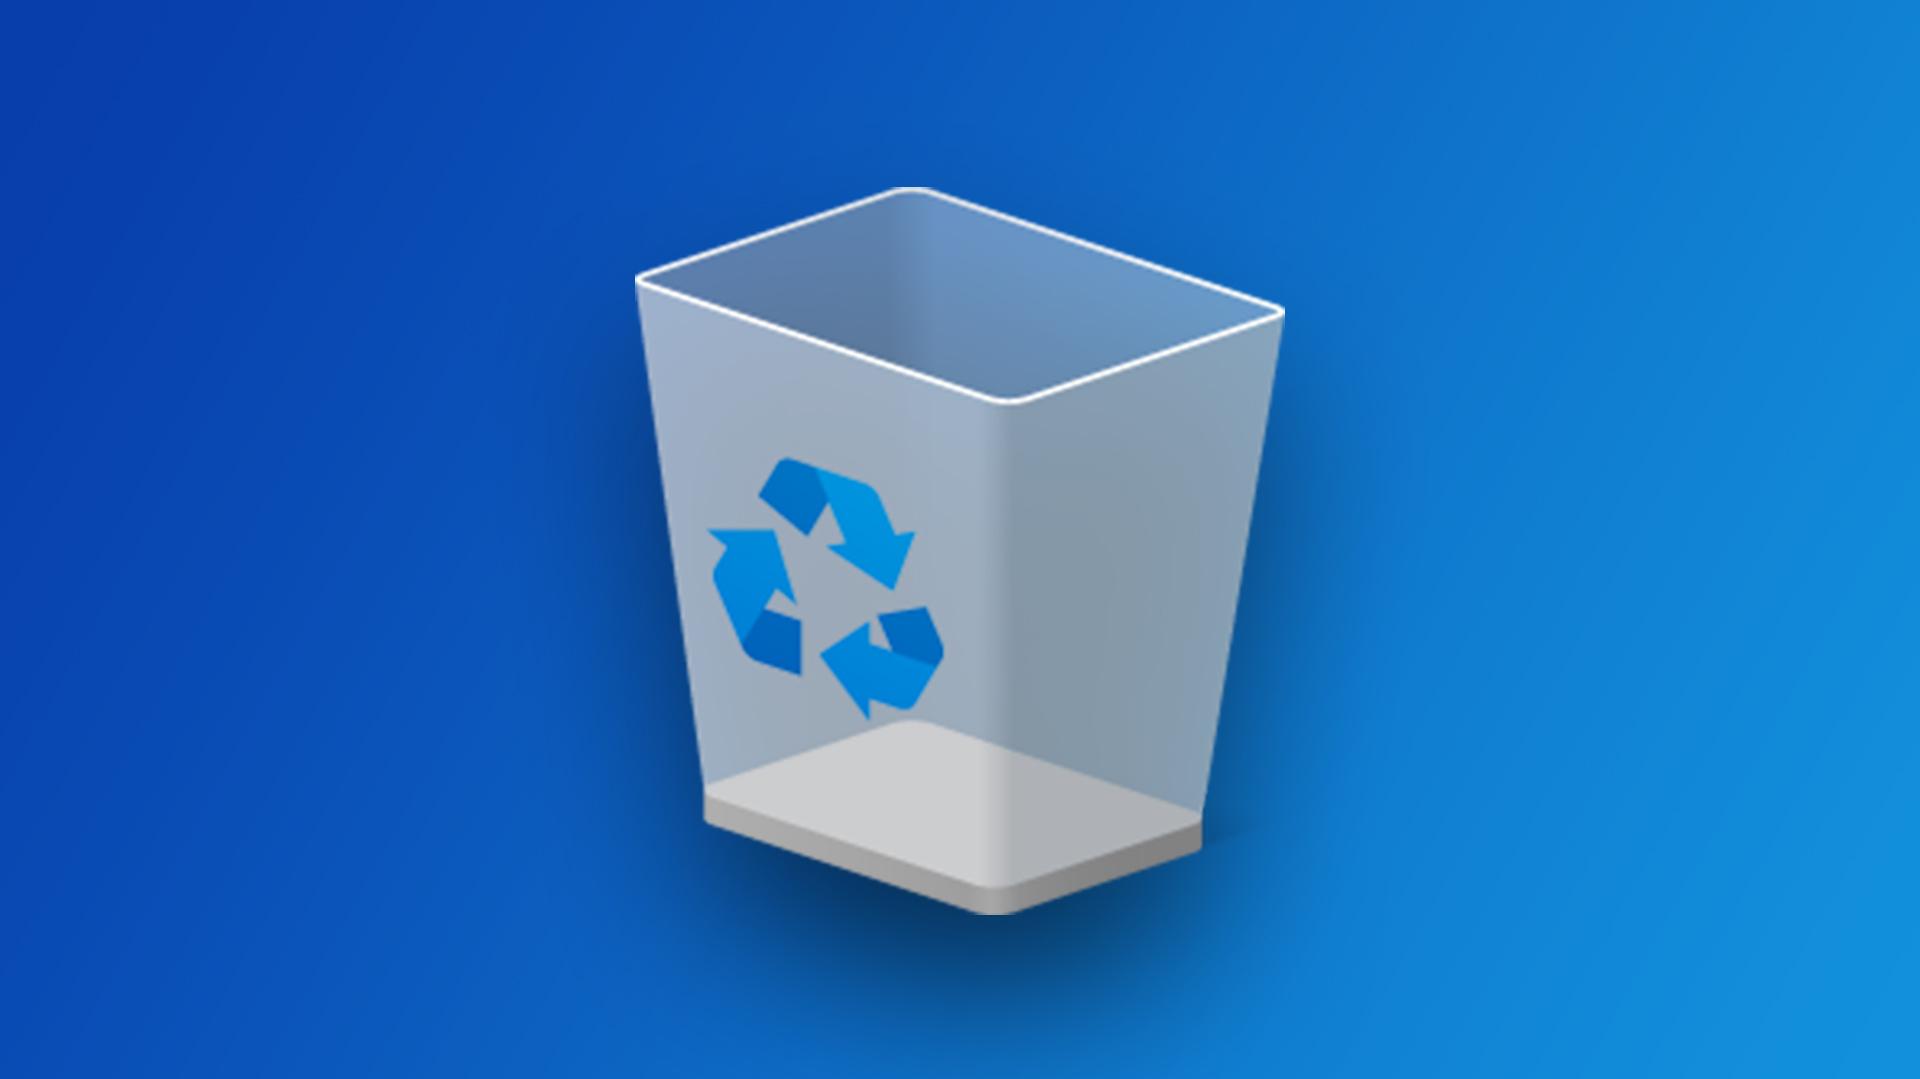 Установить корзину на рабочий стол. Windows 10 recycle bin icon. Корзина виндовс 10. Значок корзины виндовс 10. Мусорная корзина Windows 10.